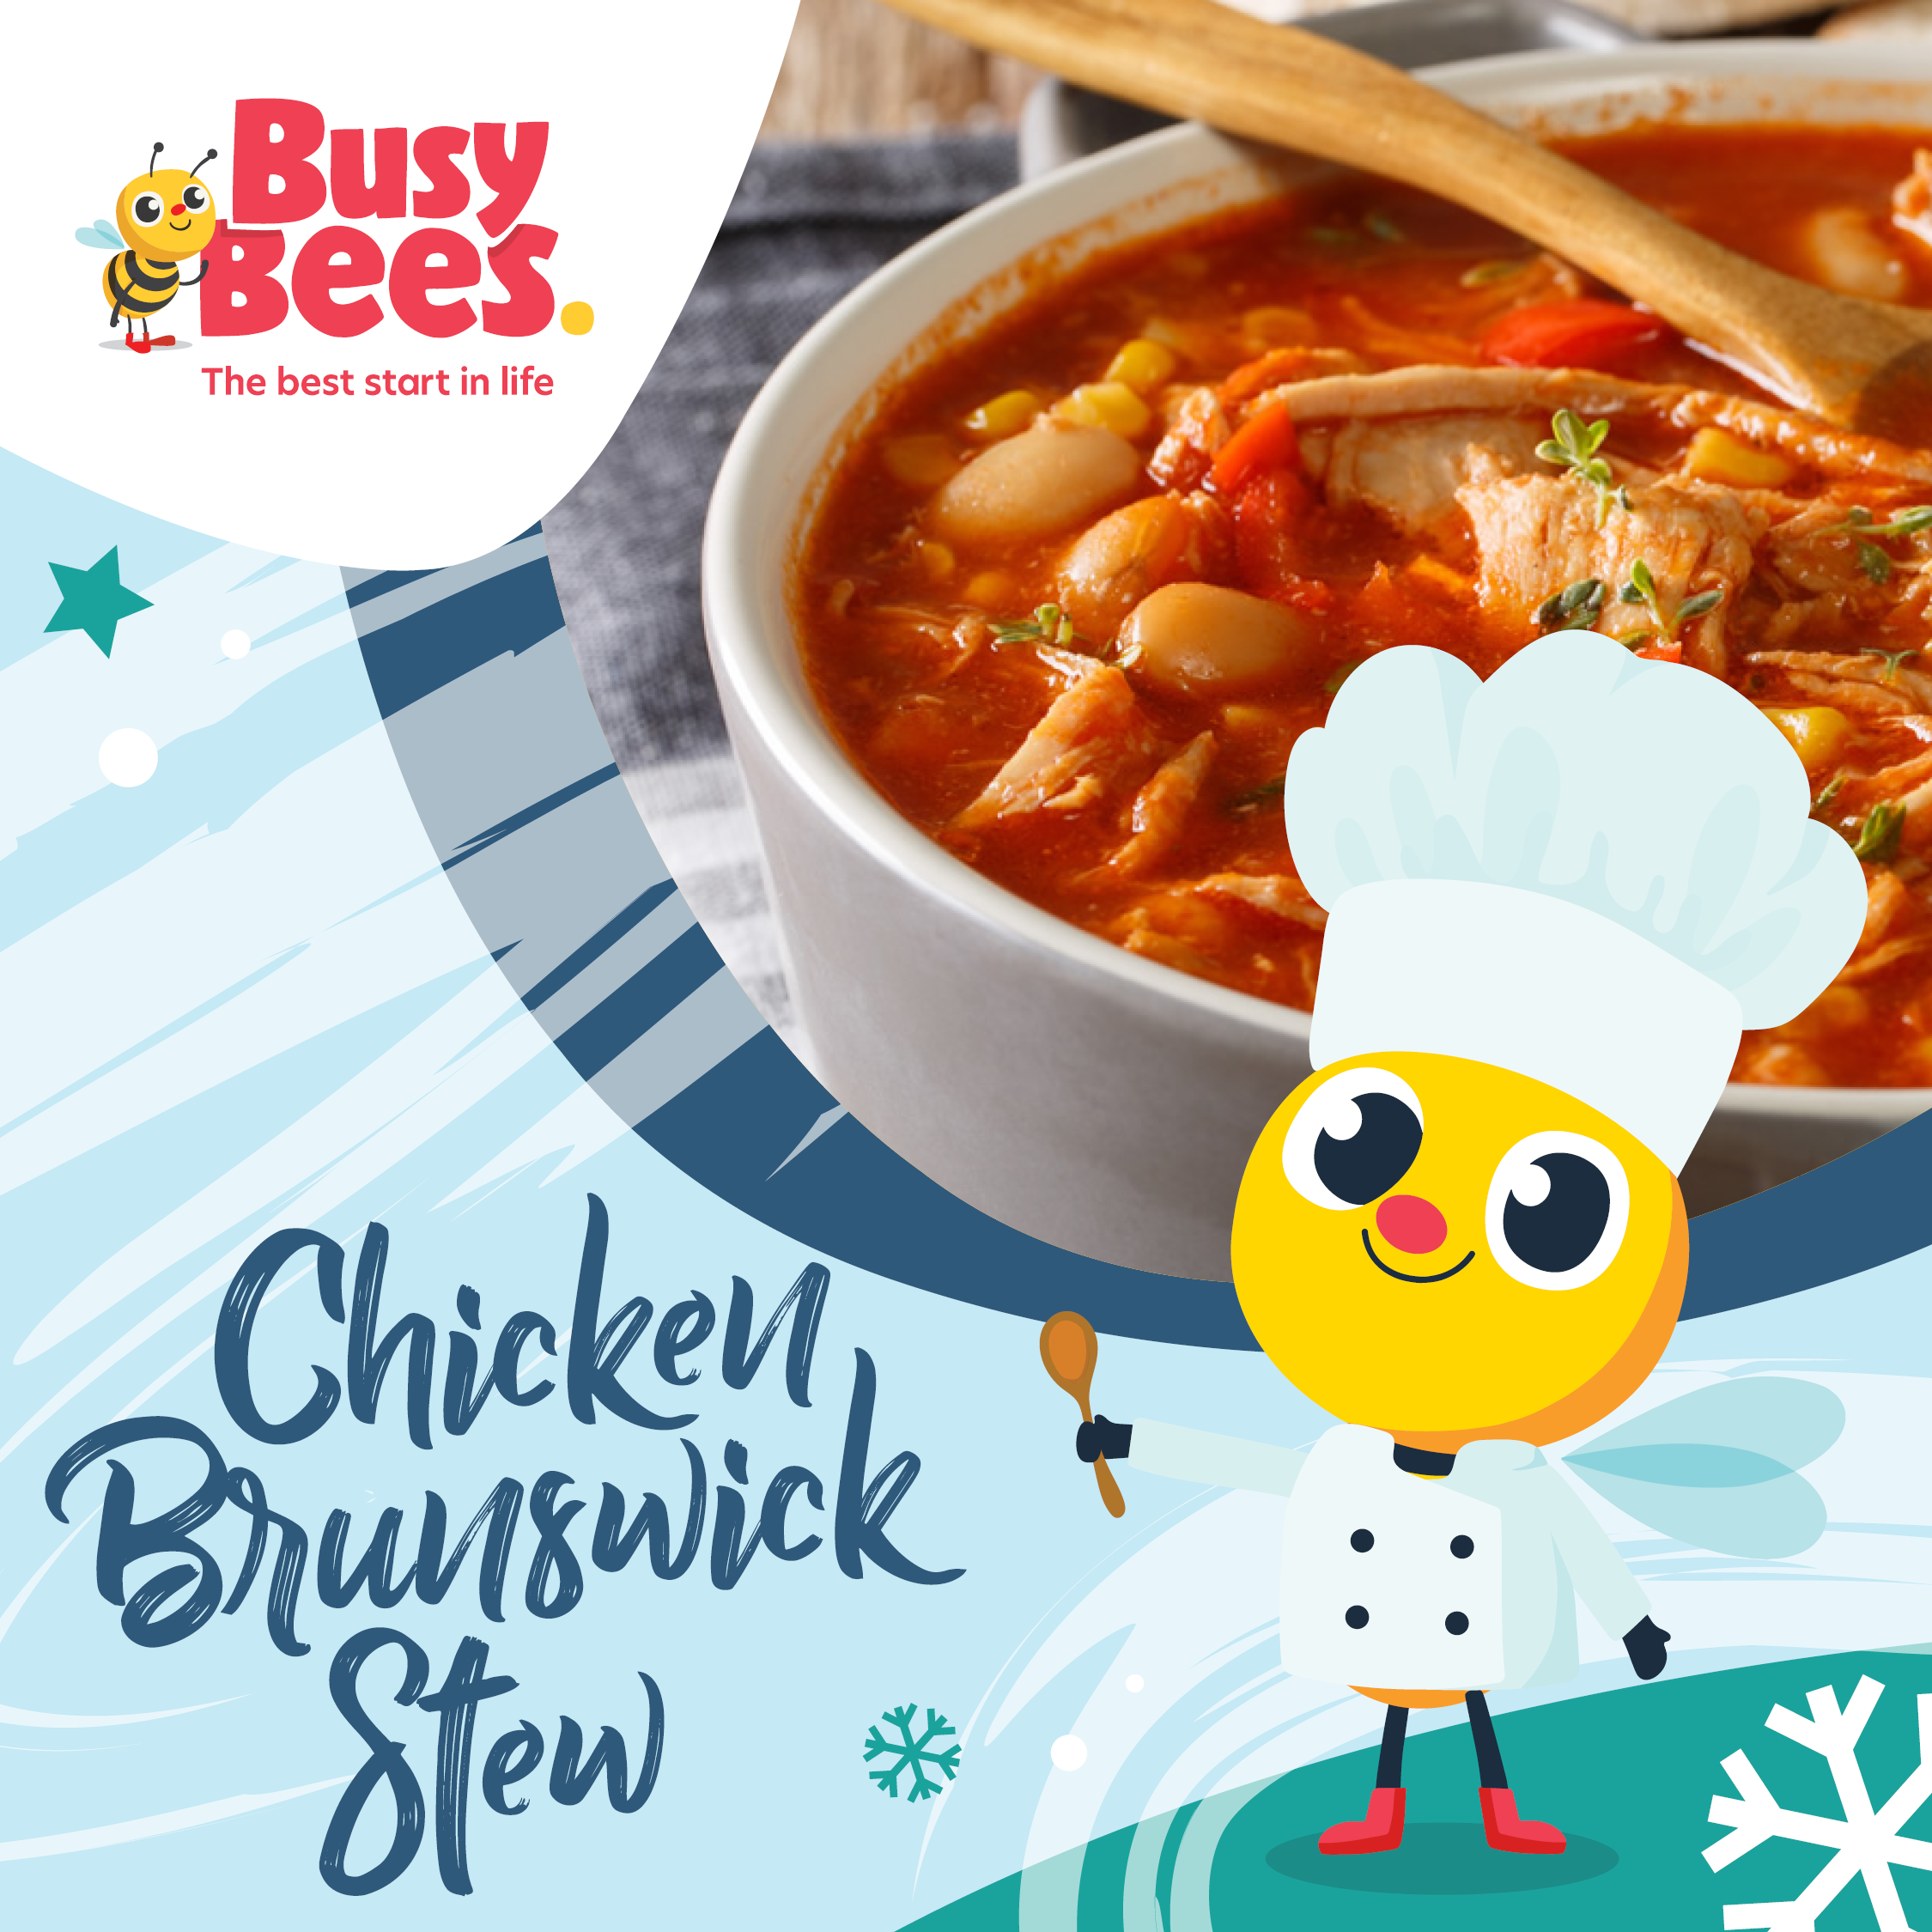 Chicken brunswick stew